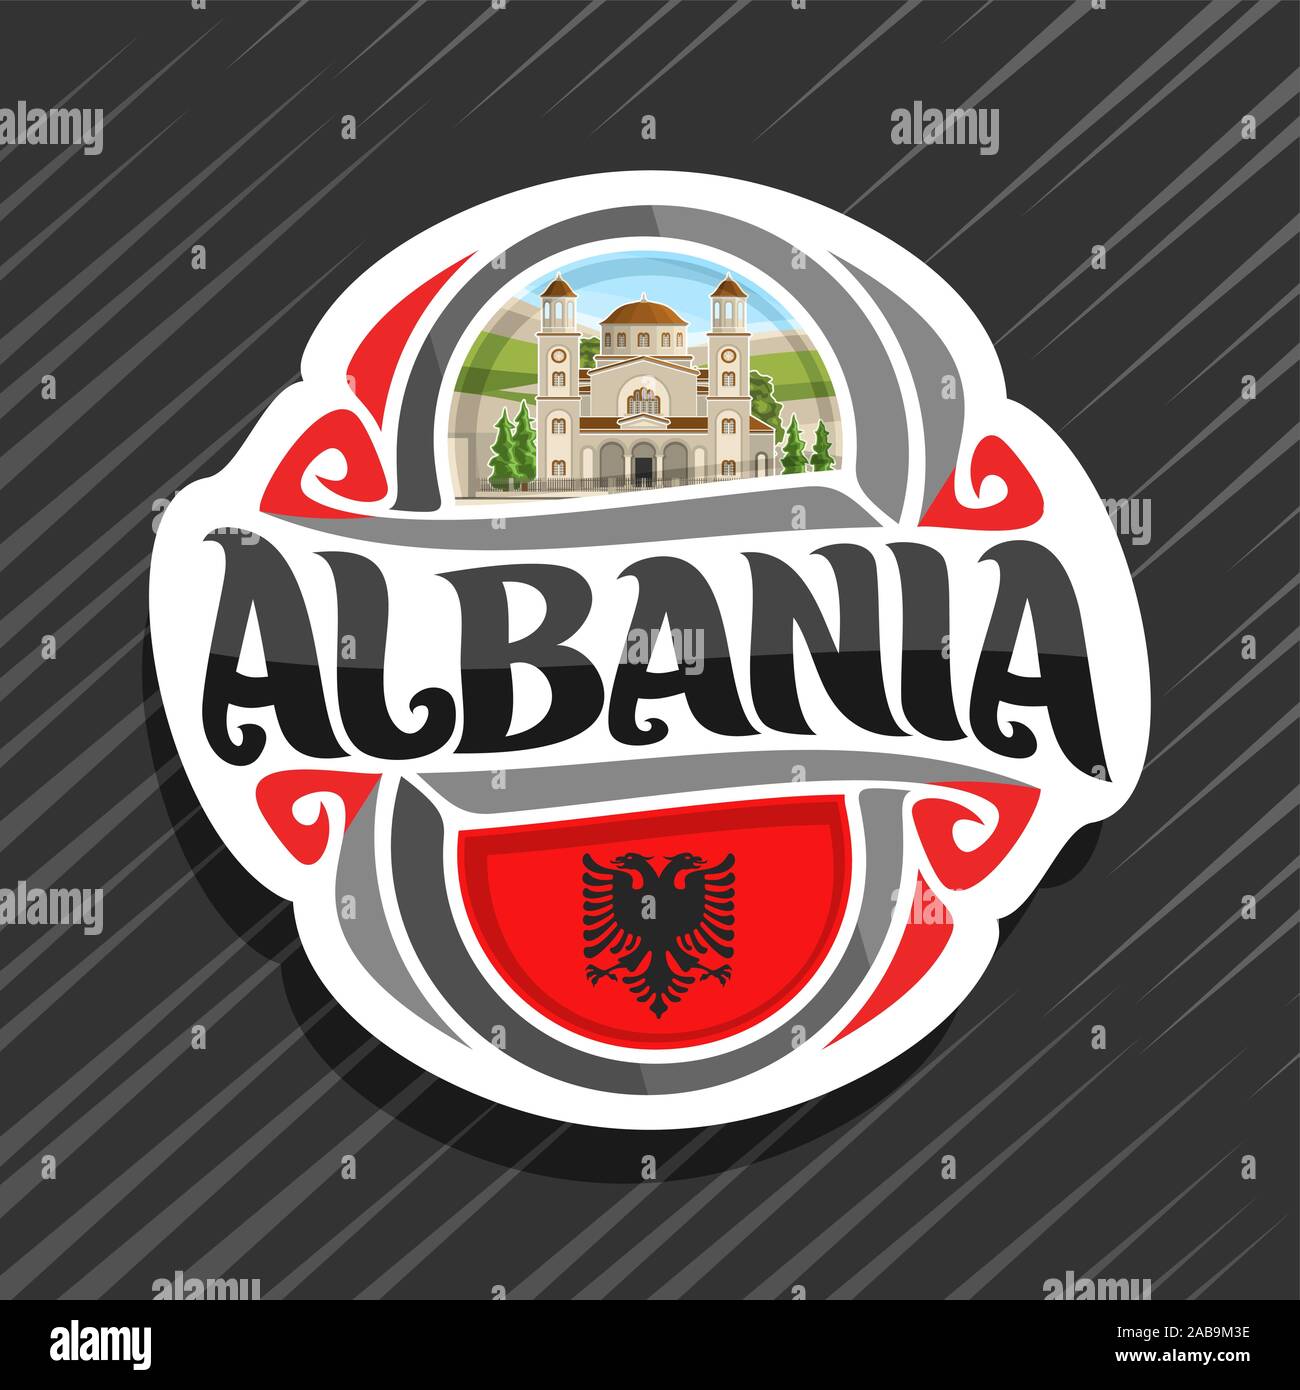 Vector logo para Albania, país, imán de nevera con la bandera del estado albanés, pincel original typeface para word albania y símbolo nacional albanesa - Saint Ilustración del Vector